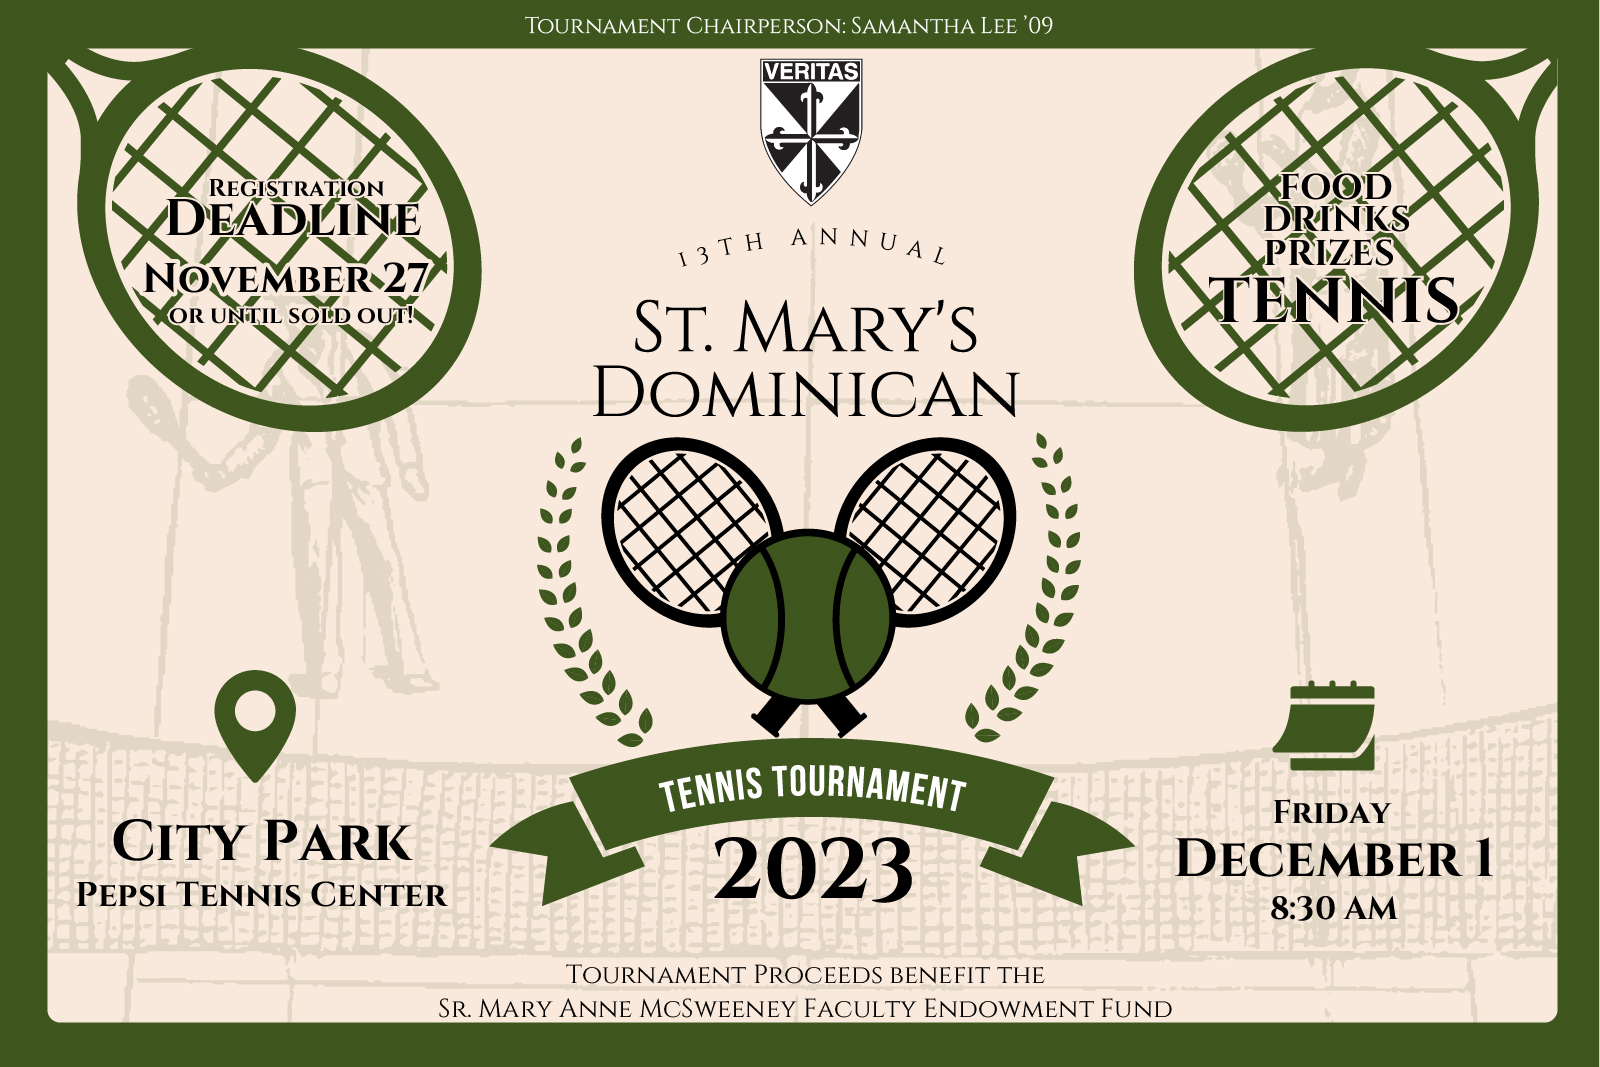 Tennis Tournament - December 1